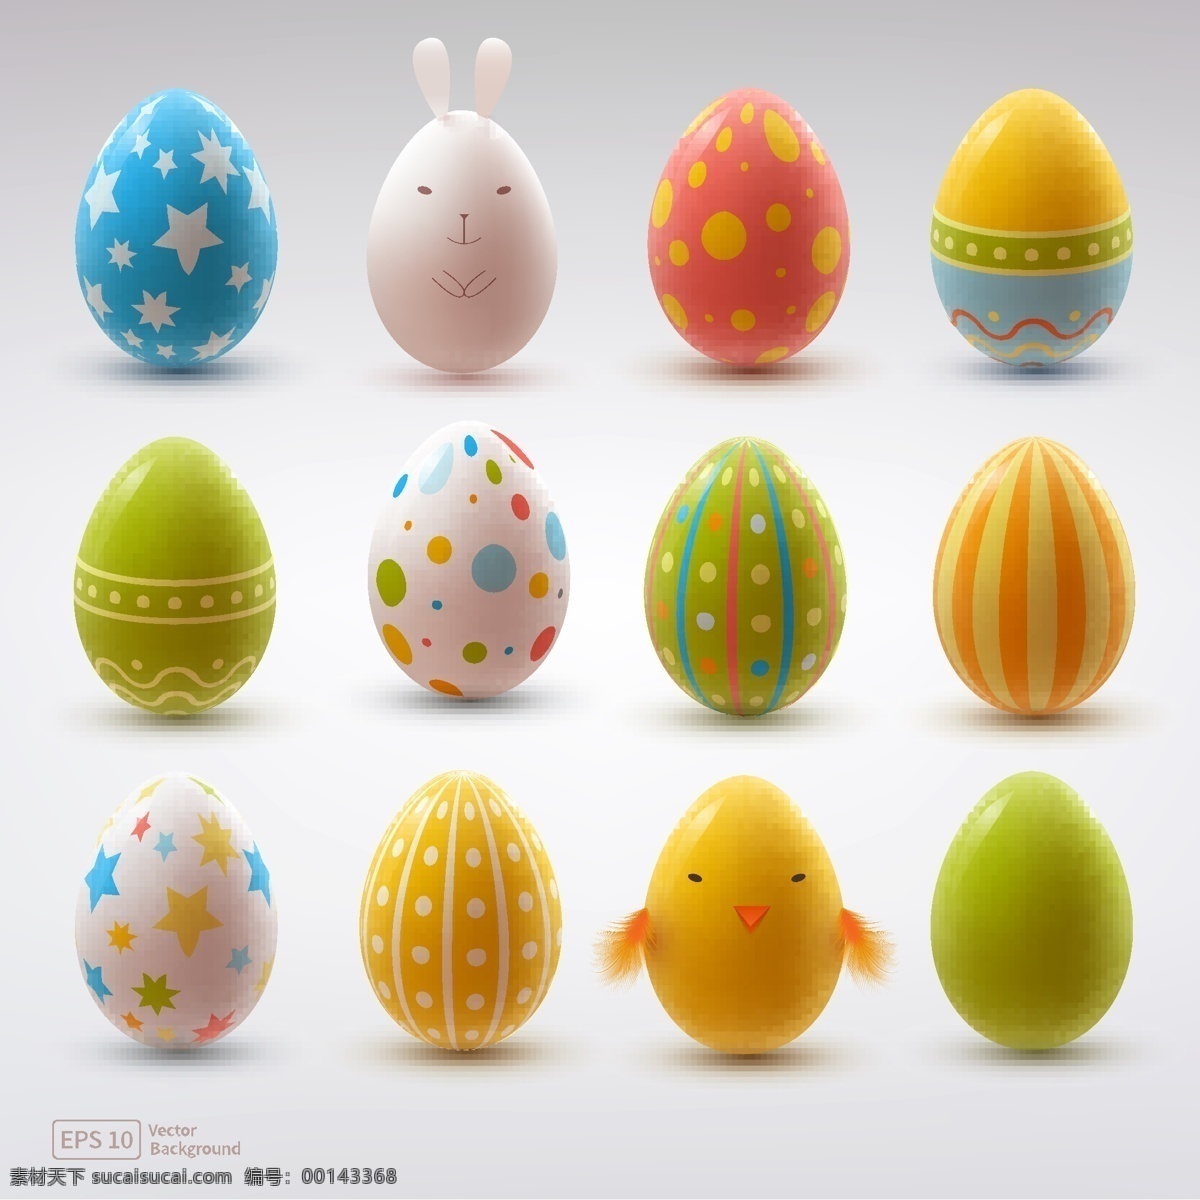 复活节 手绘 鸡蛋 彩蛋 兔子 卡通 节日素材 复活节背景 矢量 文化艺术 节日庆祝 白色